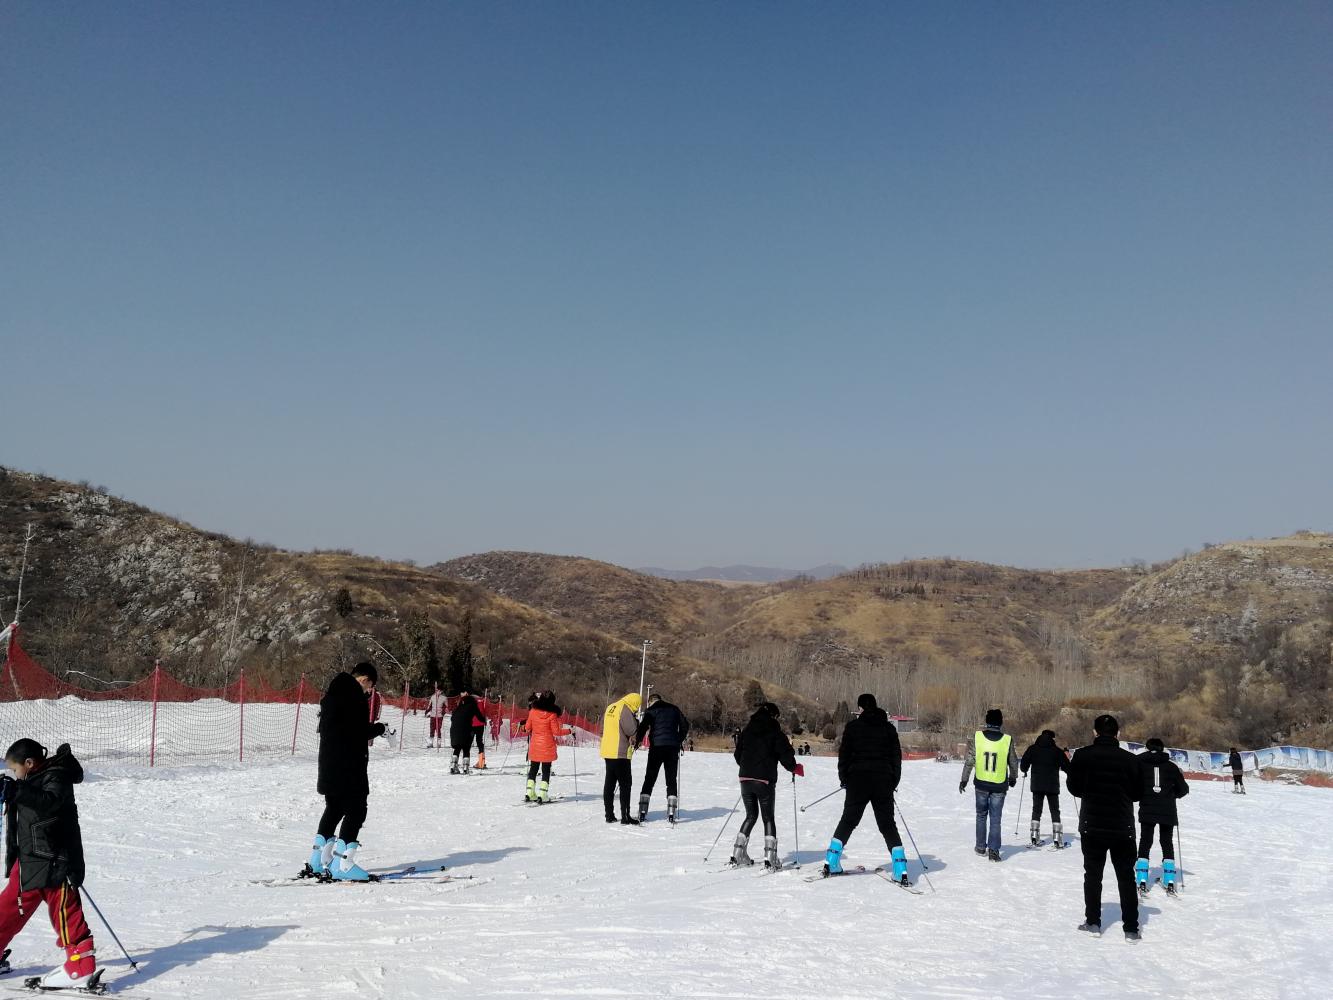 2018年12月15日——17日鹤壁必捷滑雪场试营业3天票价49元